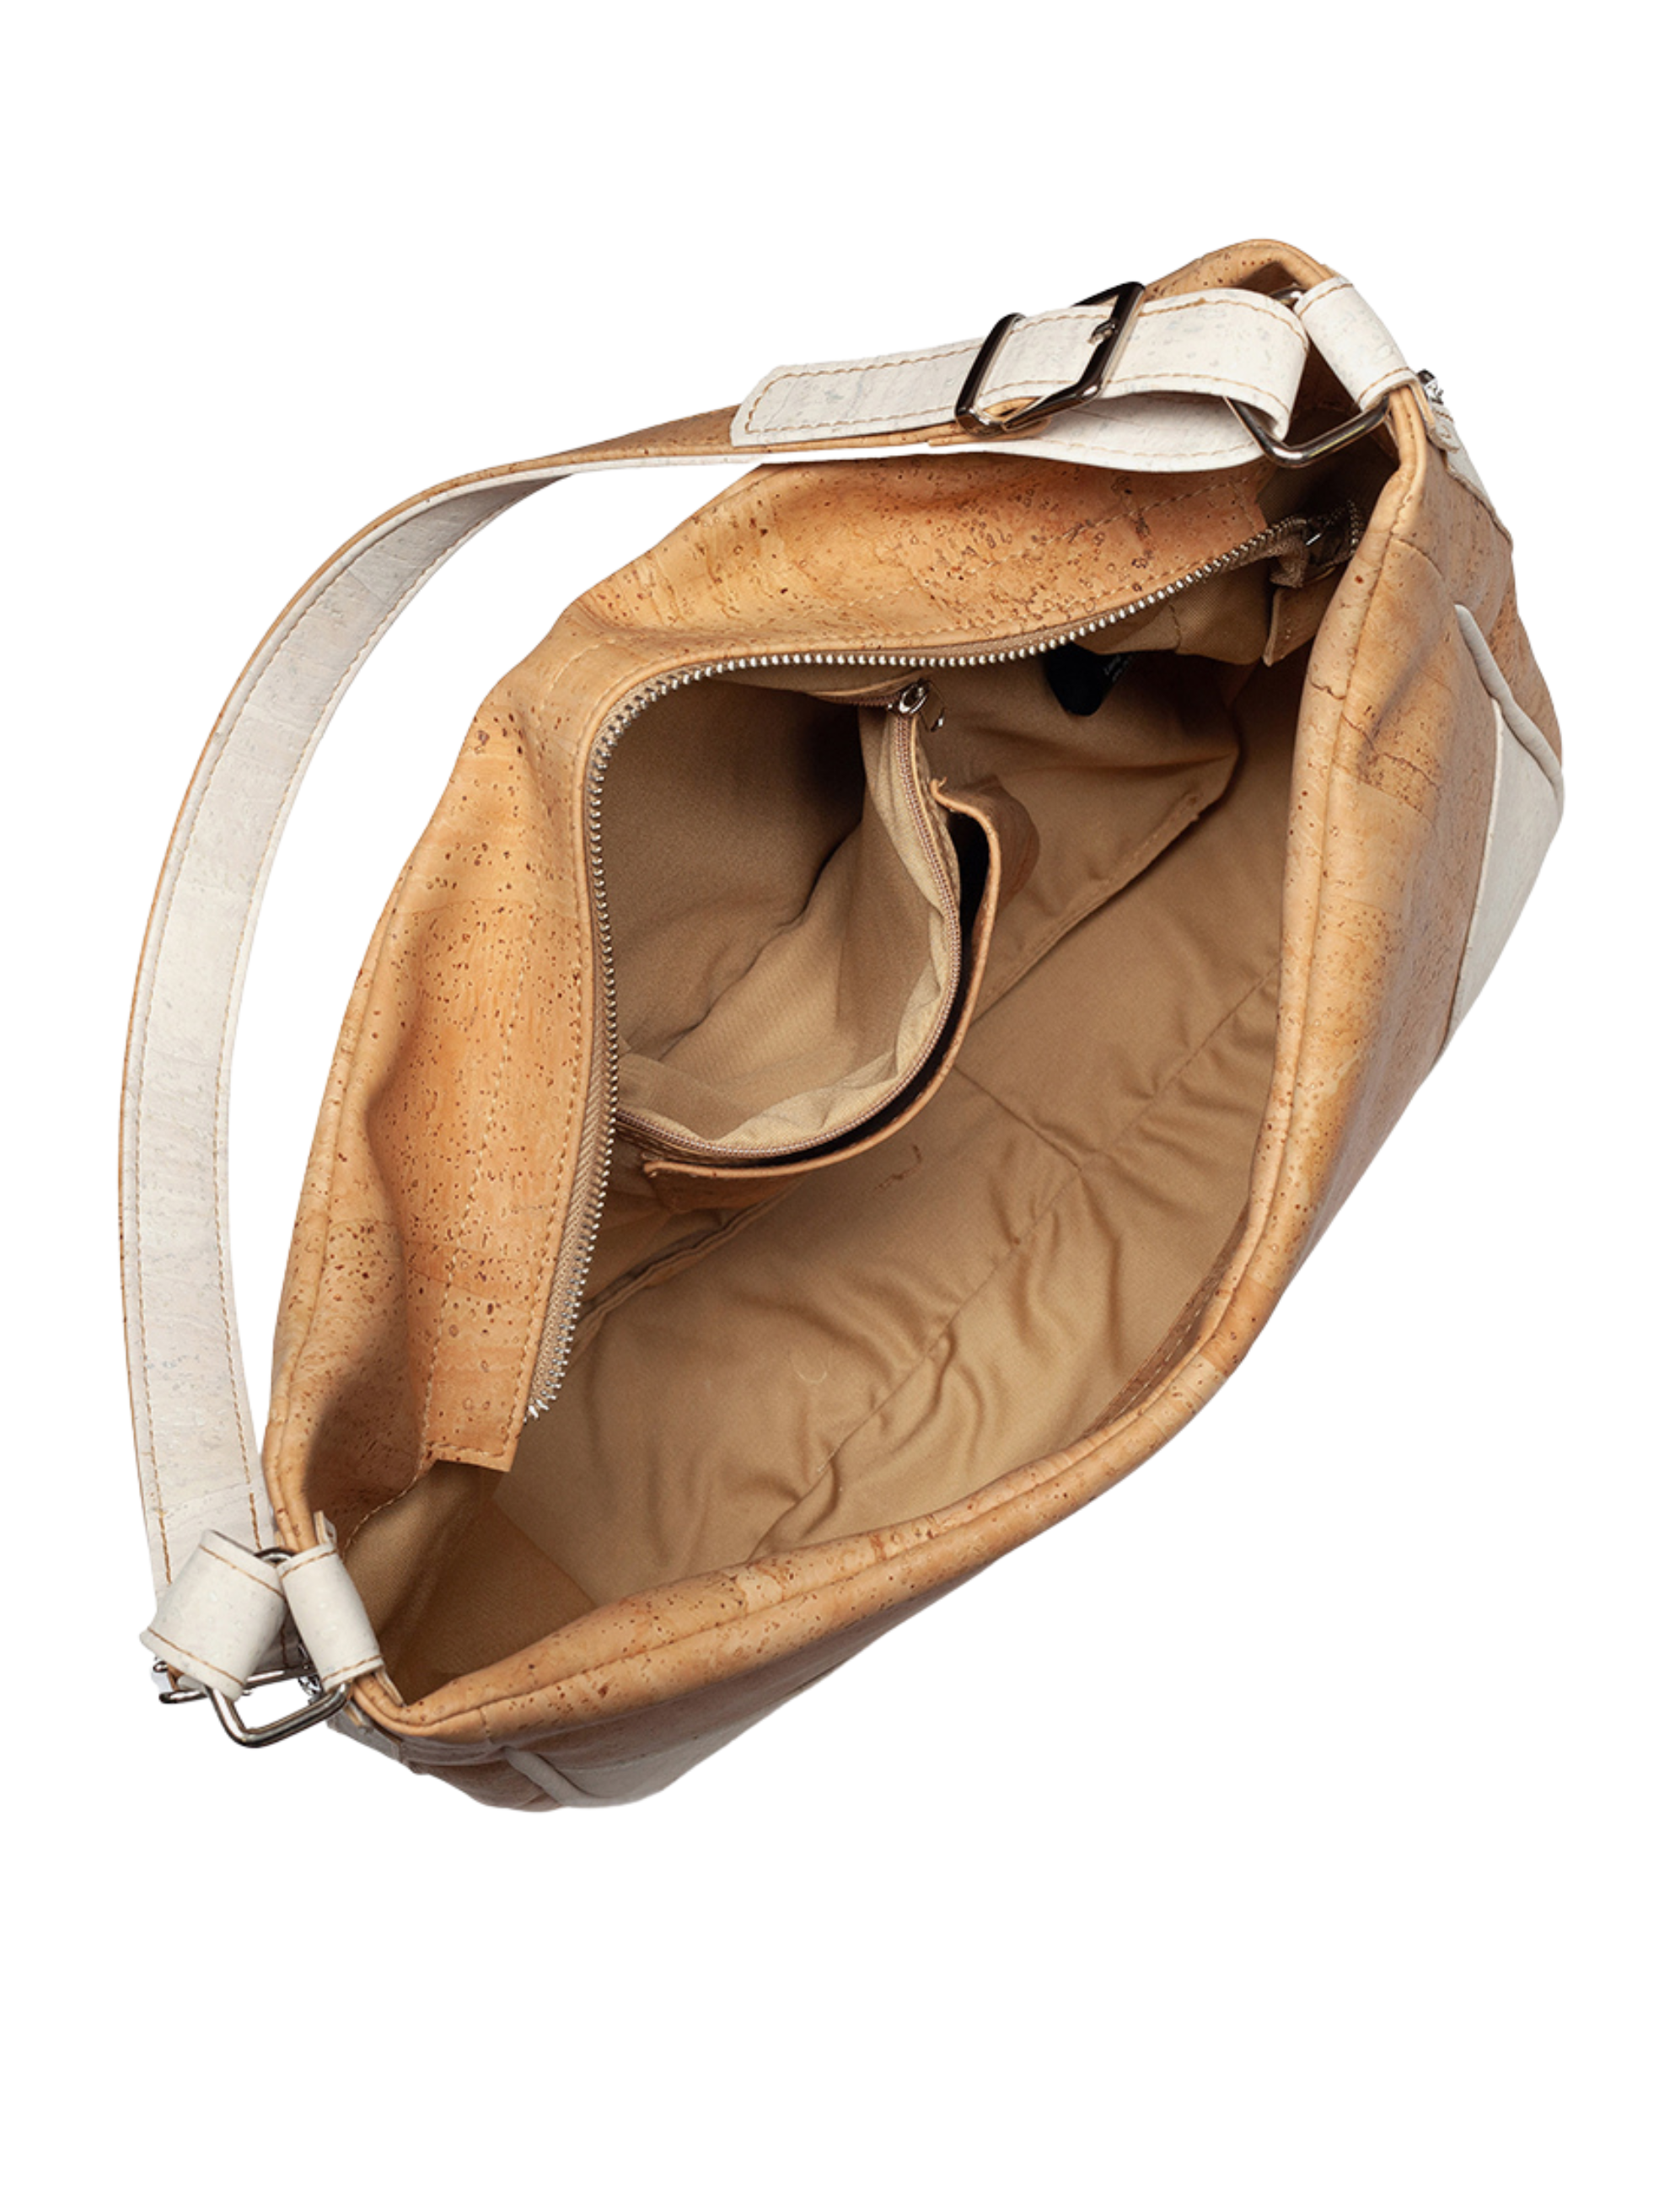 #color_ Beige | Artelusa Cork Shoulder Bag - Beige - 4006.01-B03_4